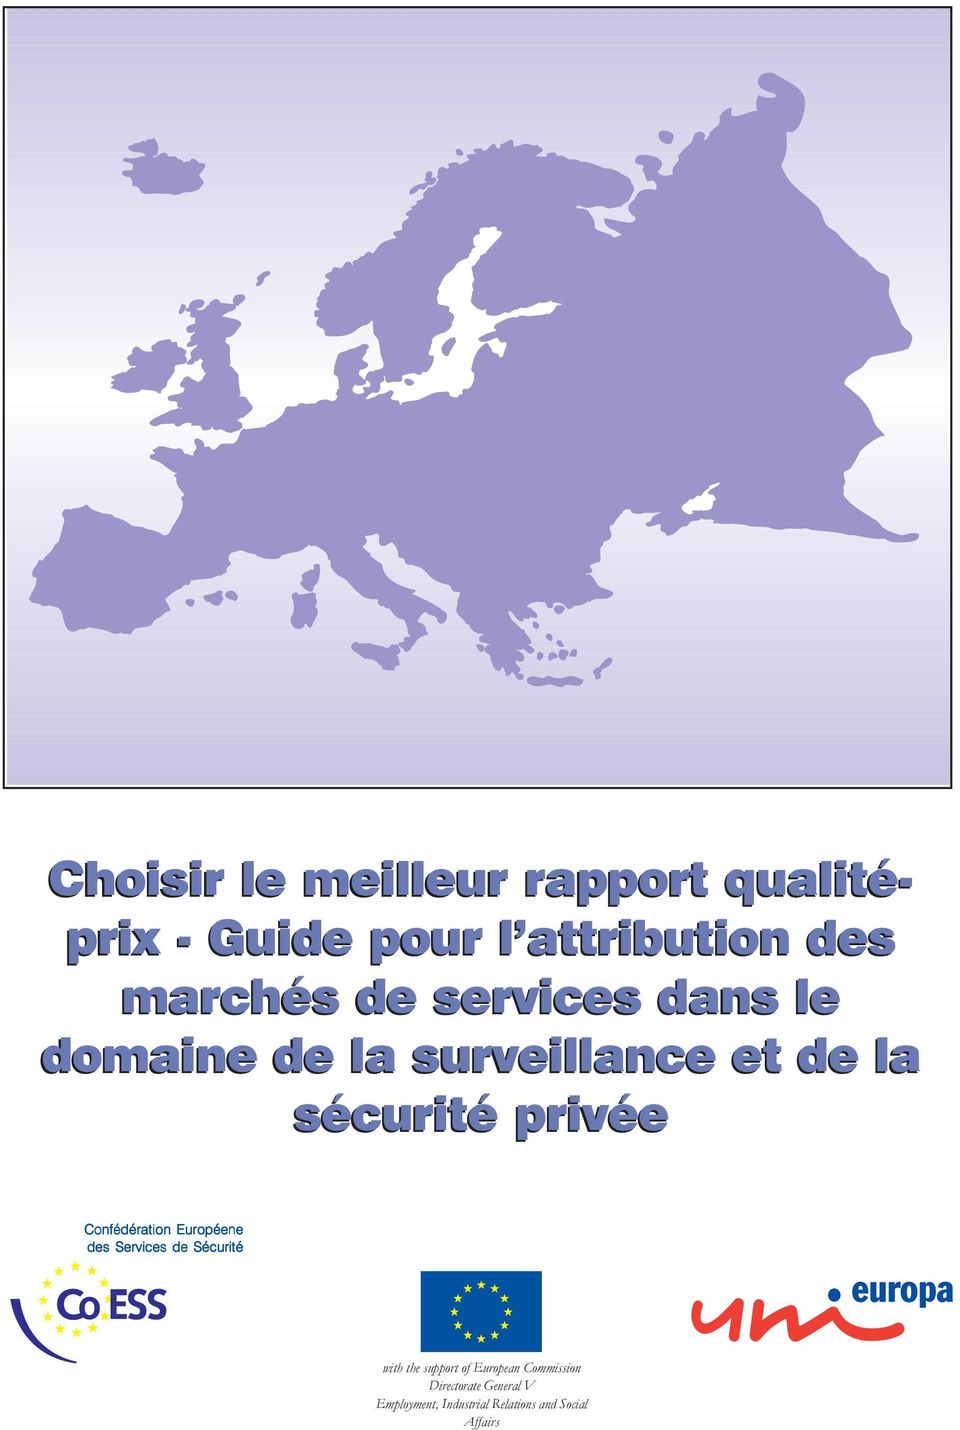 Confédération Européene des Services de Sécurité with the support of European